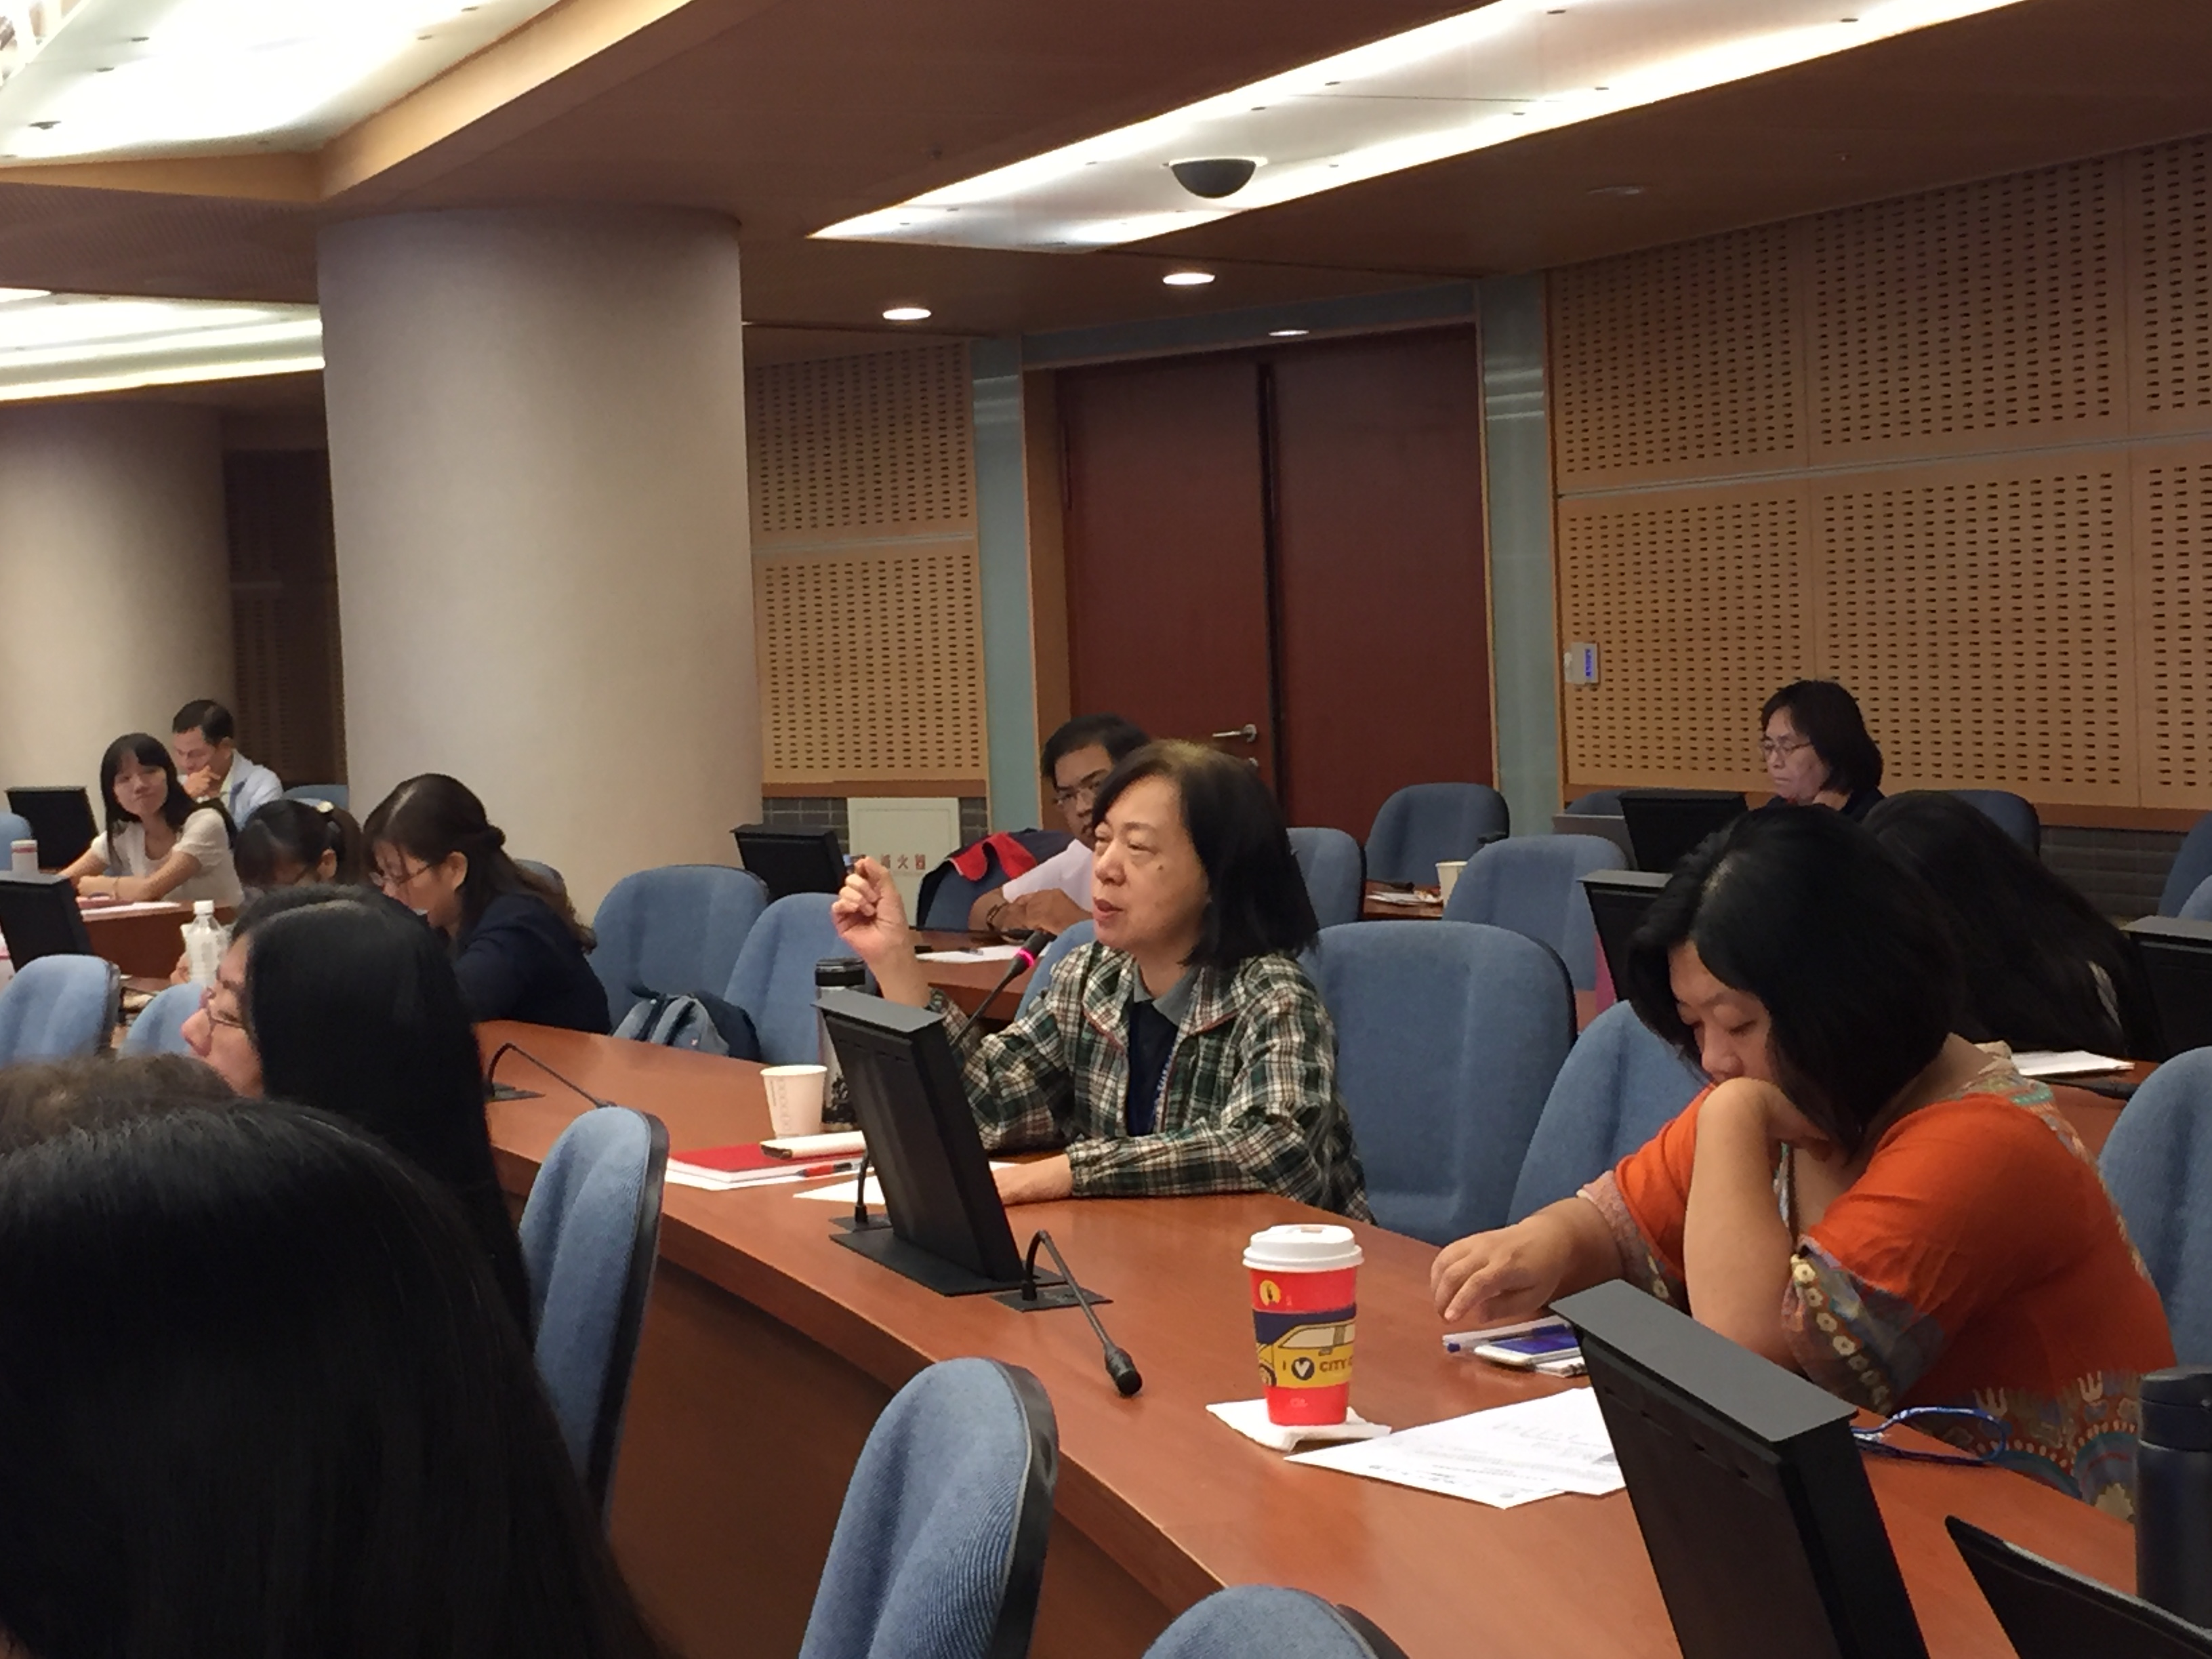 臺北市立大學通識教育中心蔡佩蓉老師於培訓課程中向講師提問